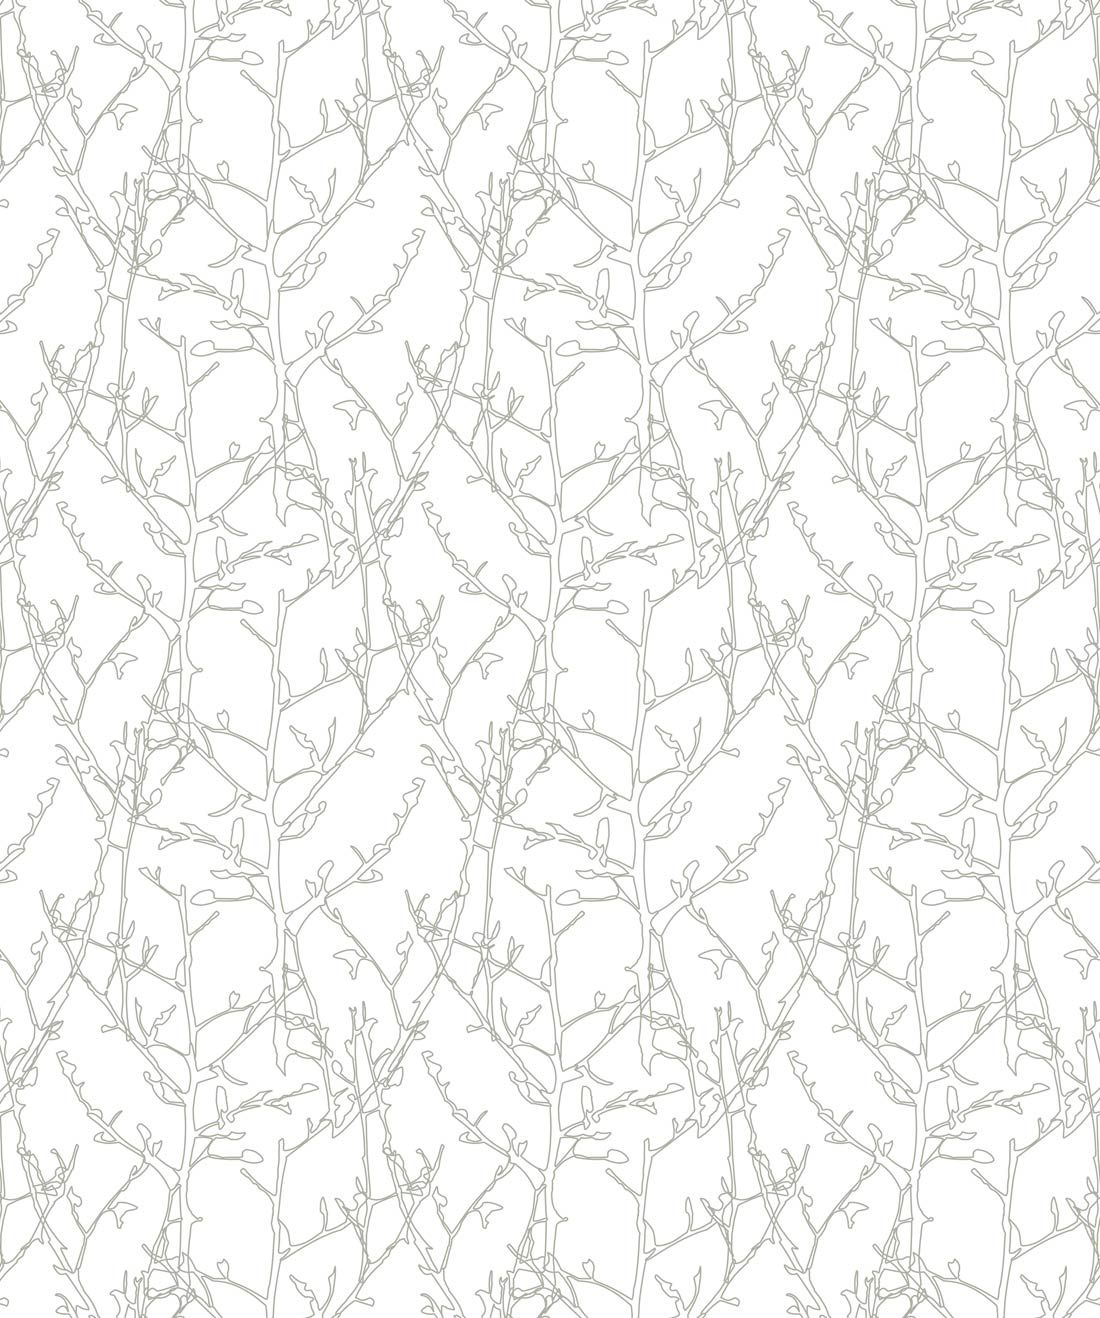 Twigs Wallpaper